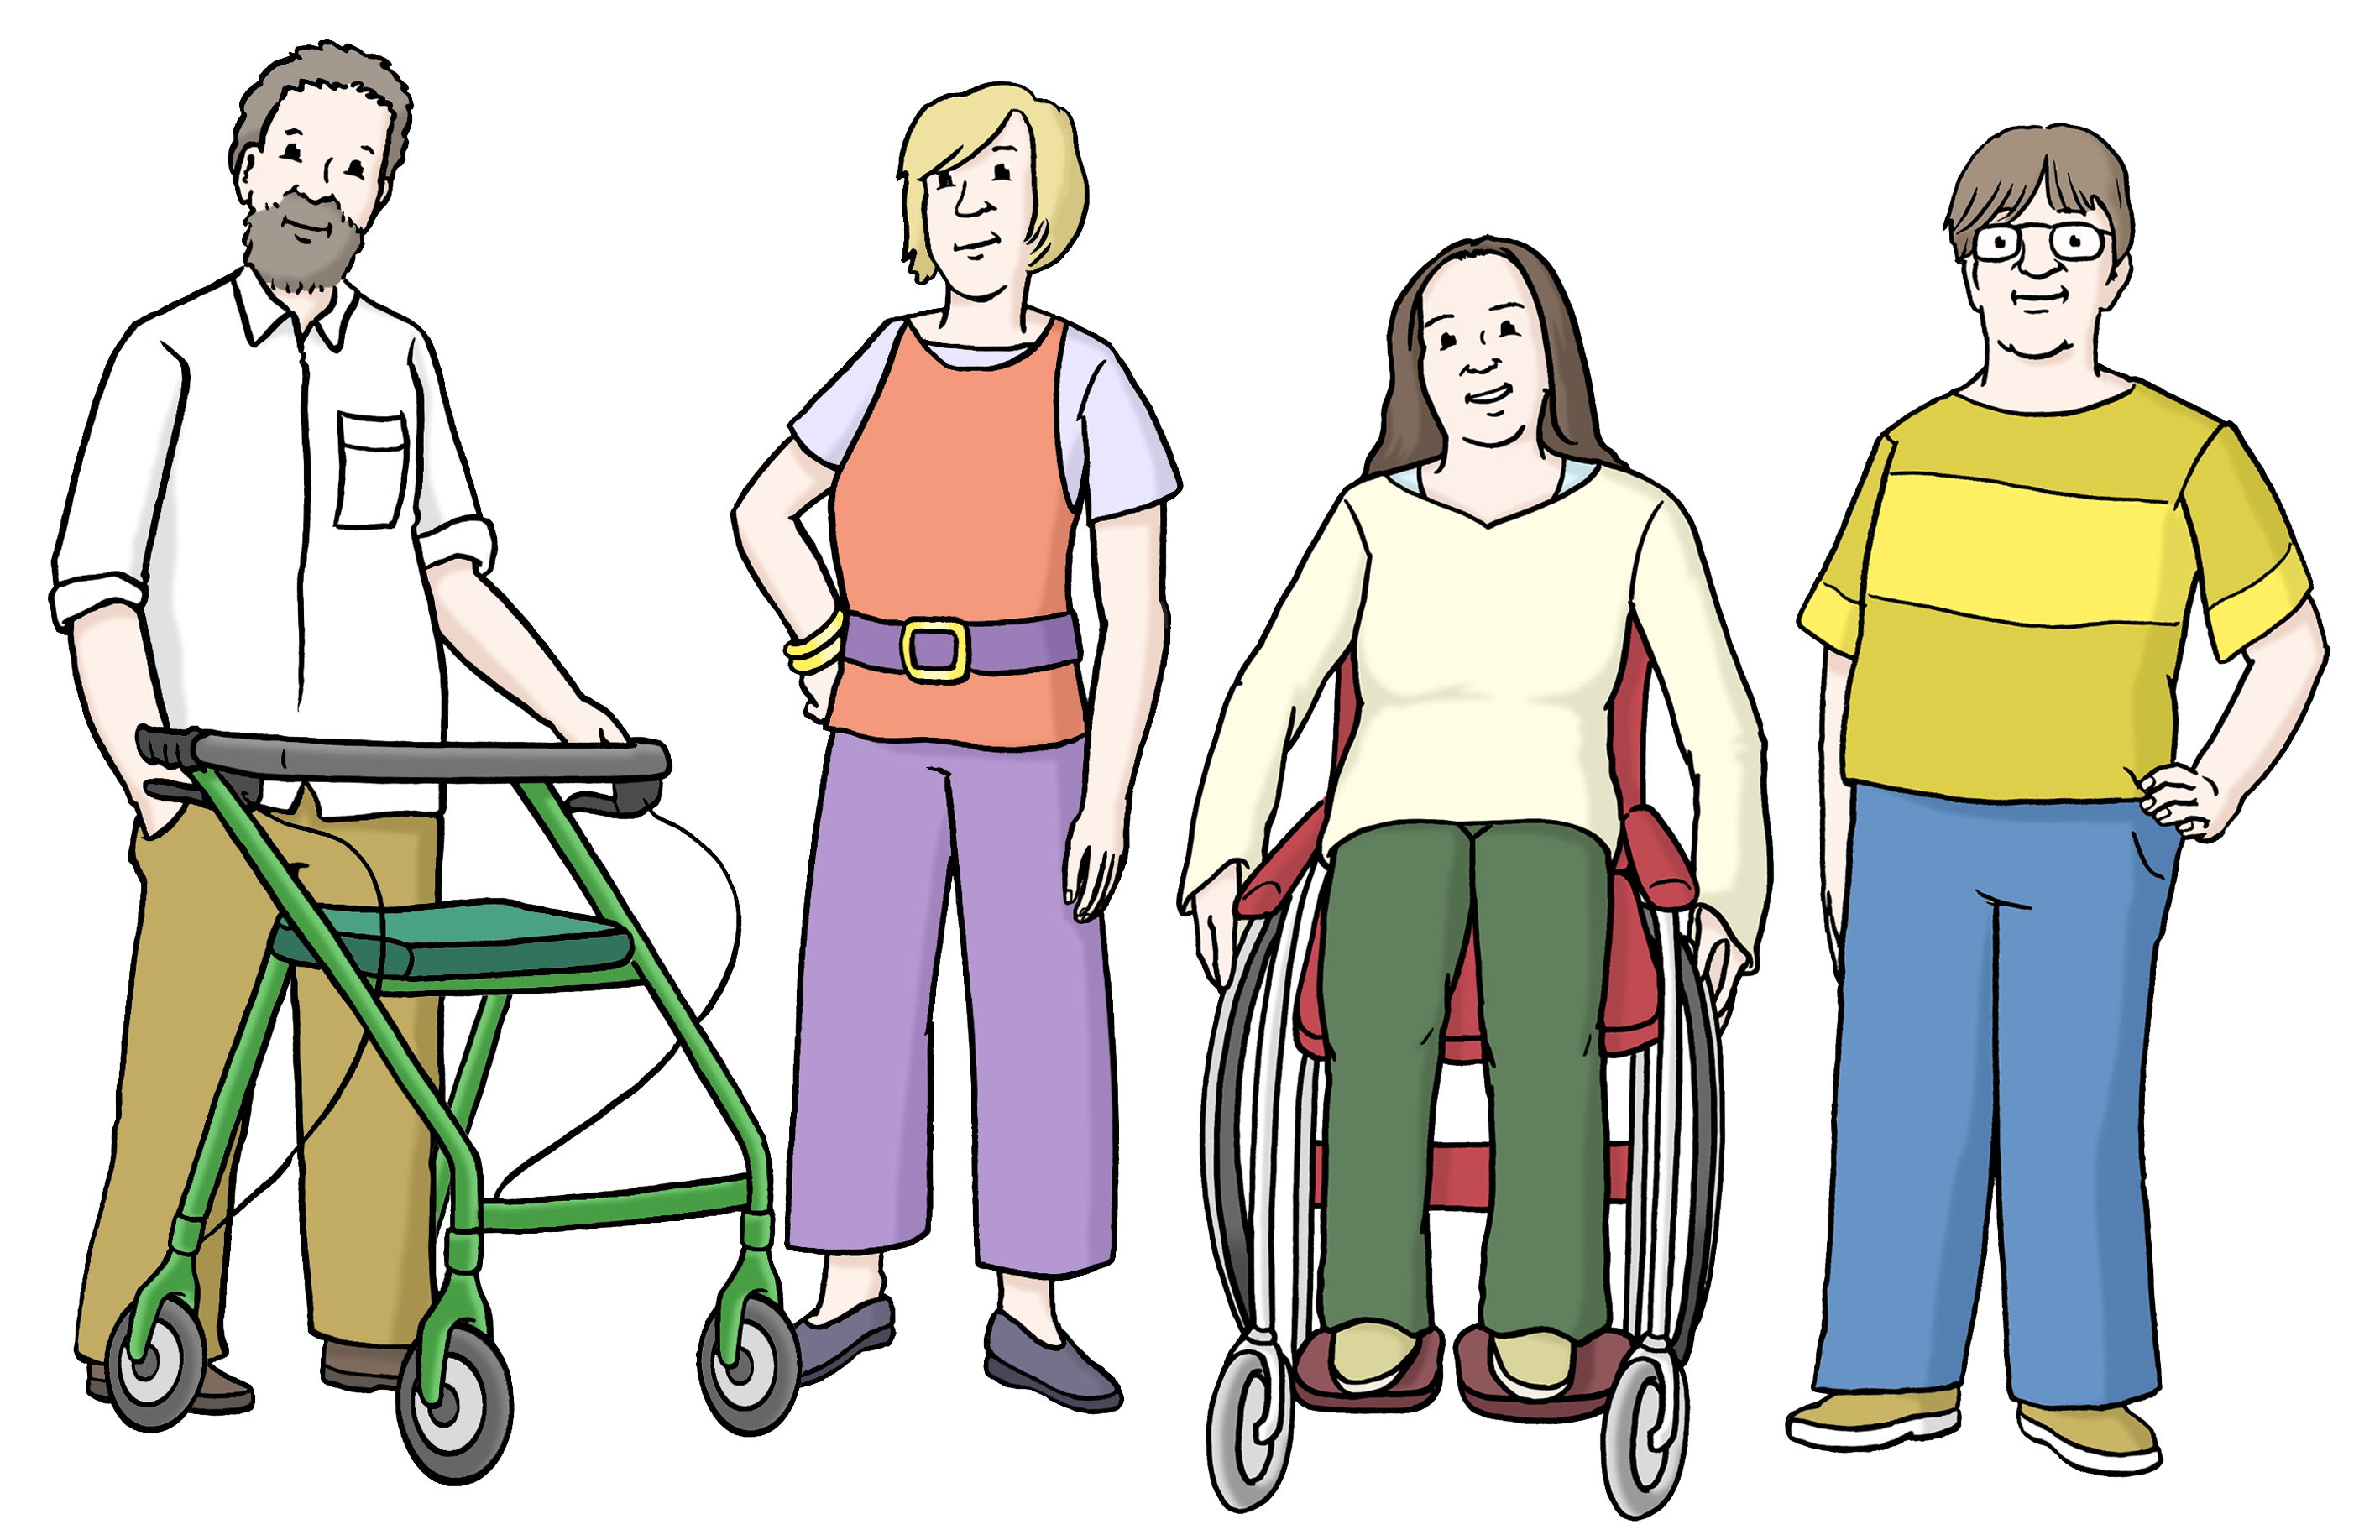 Leichte Sprache Bild: vier Menschen nebeneinander, davon ein Mann mit Rollator und eine Frau im Rollstuhl